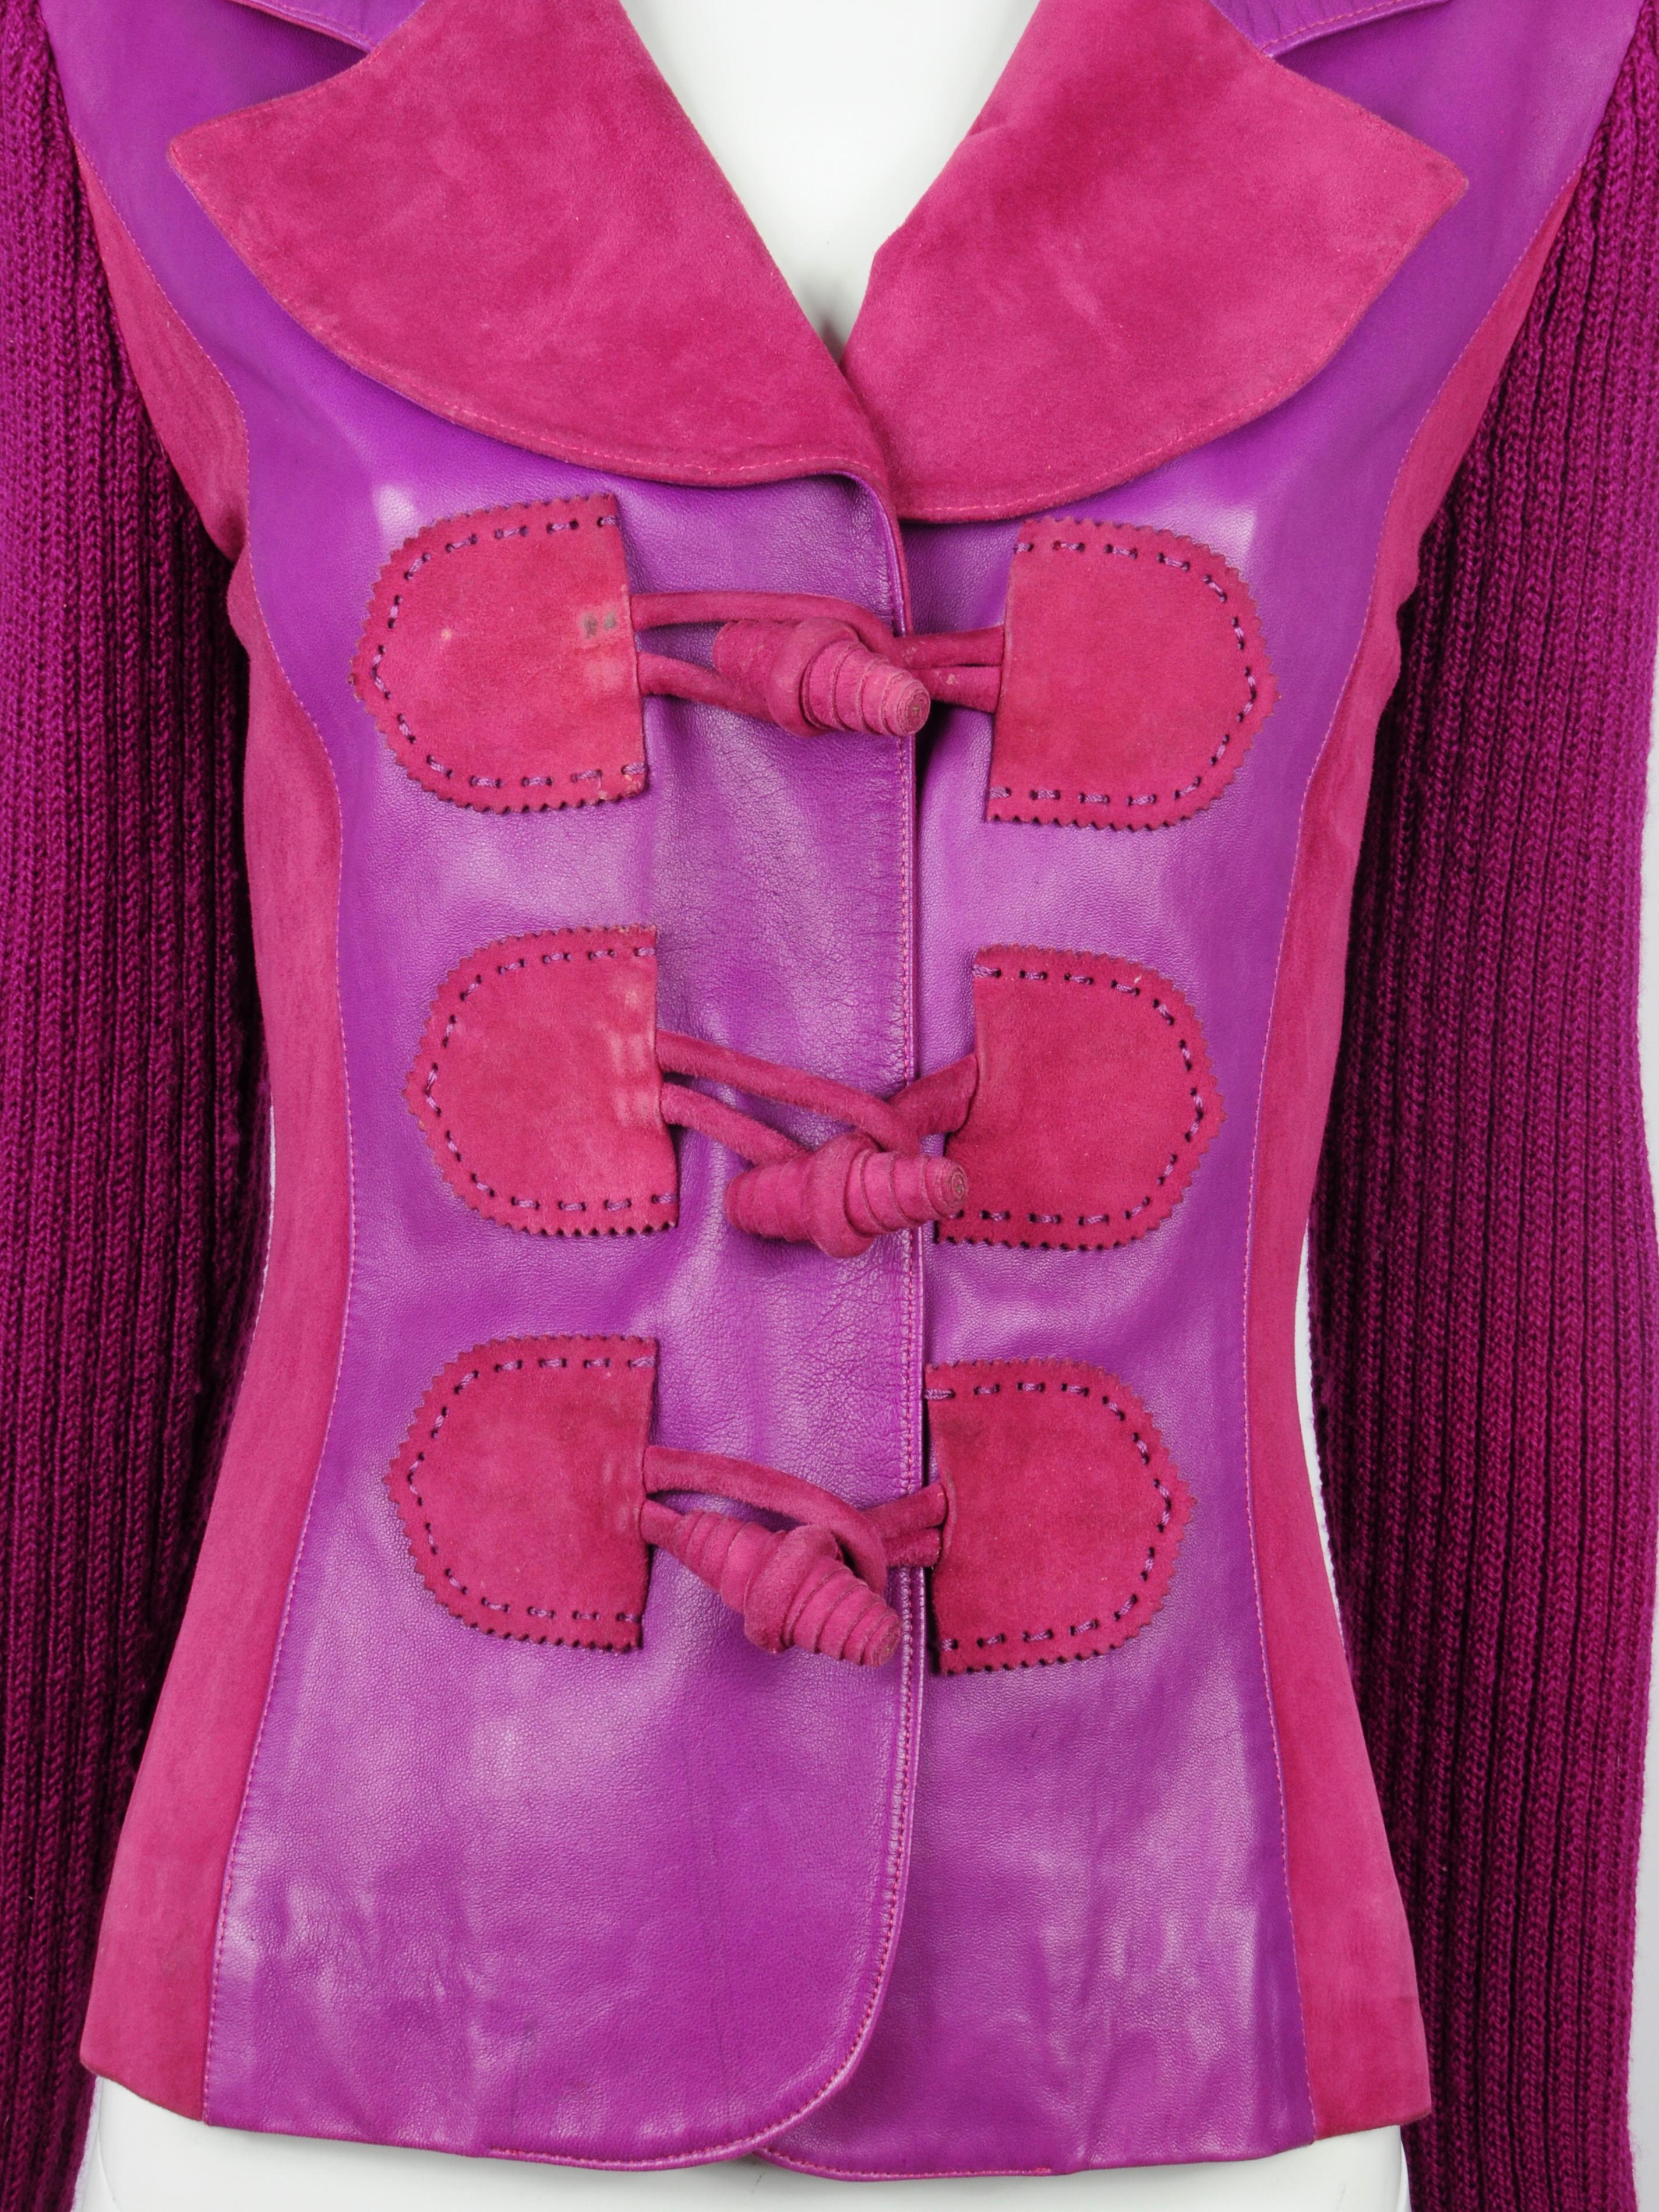 Elizabeth Wessel Monte Carlo Leather and Knitwear Purple Blazer 1980s For Sale 3